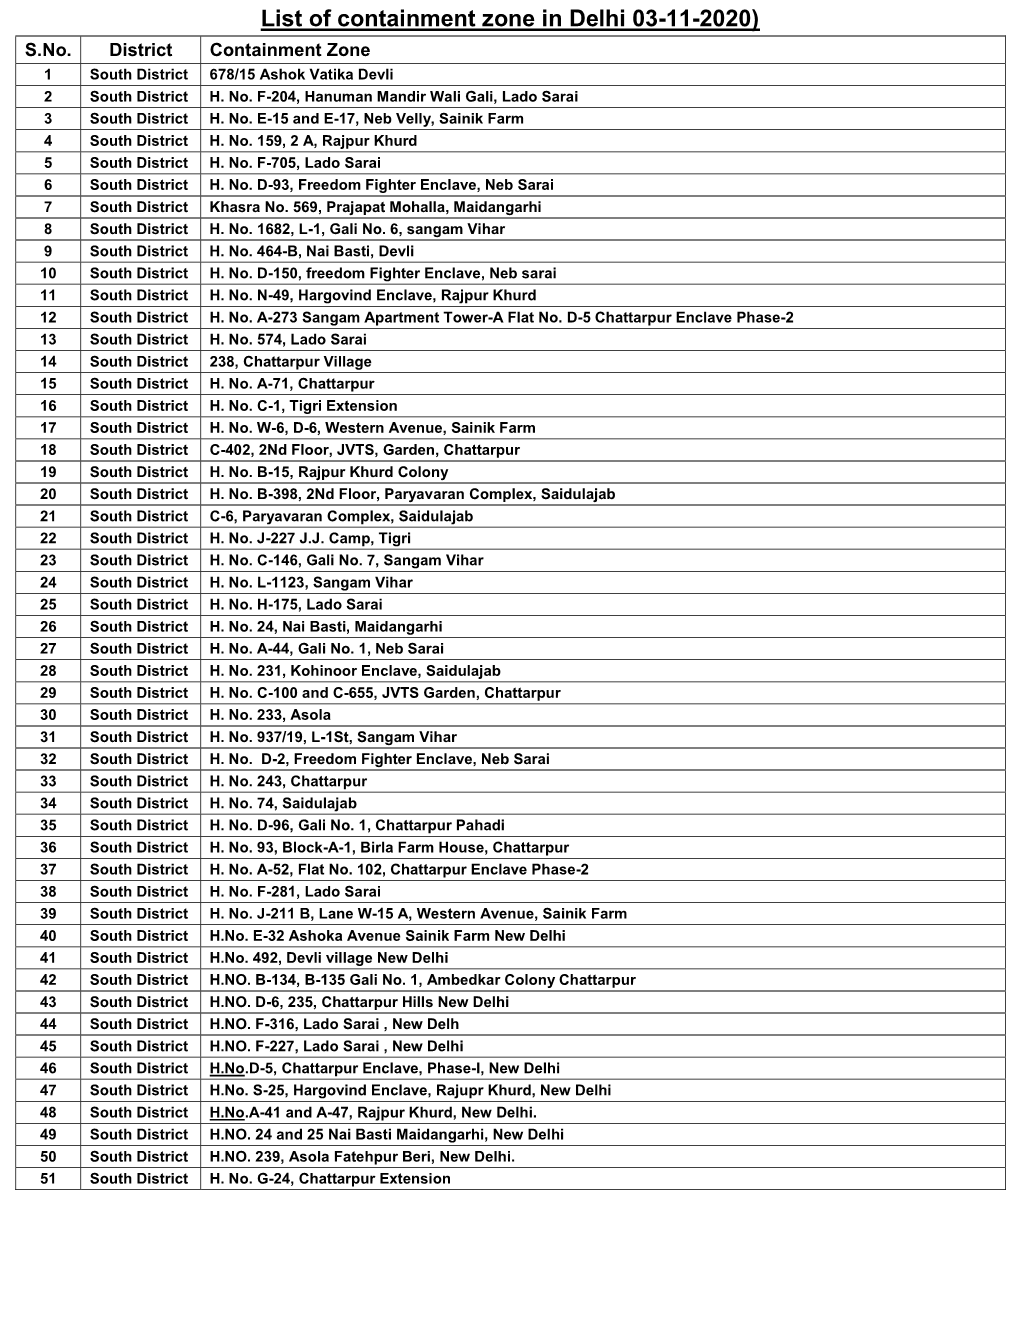 List of Containment Zone in Delhi 03-11-2020) S.No